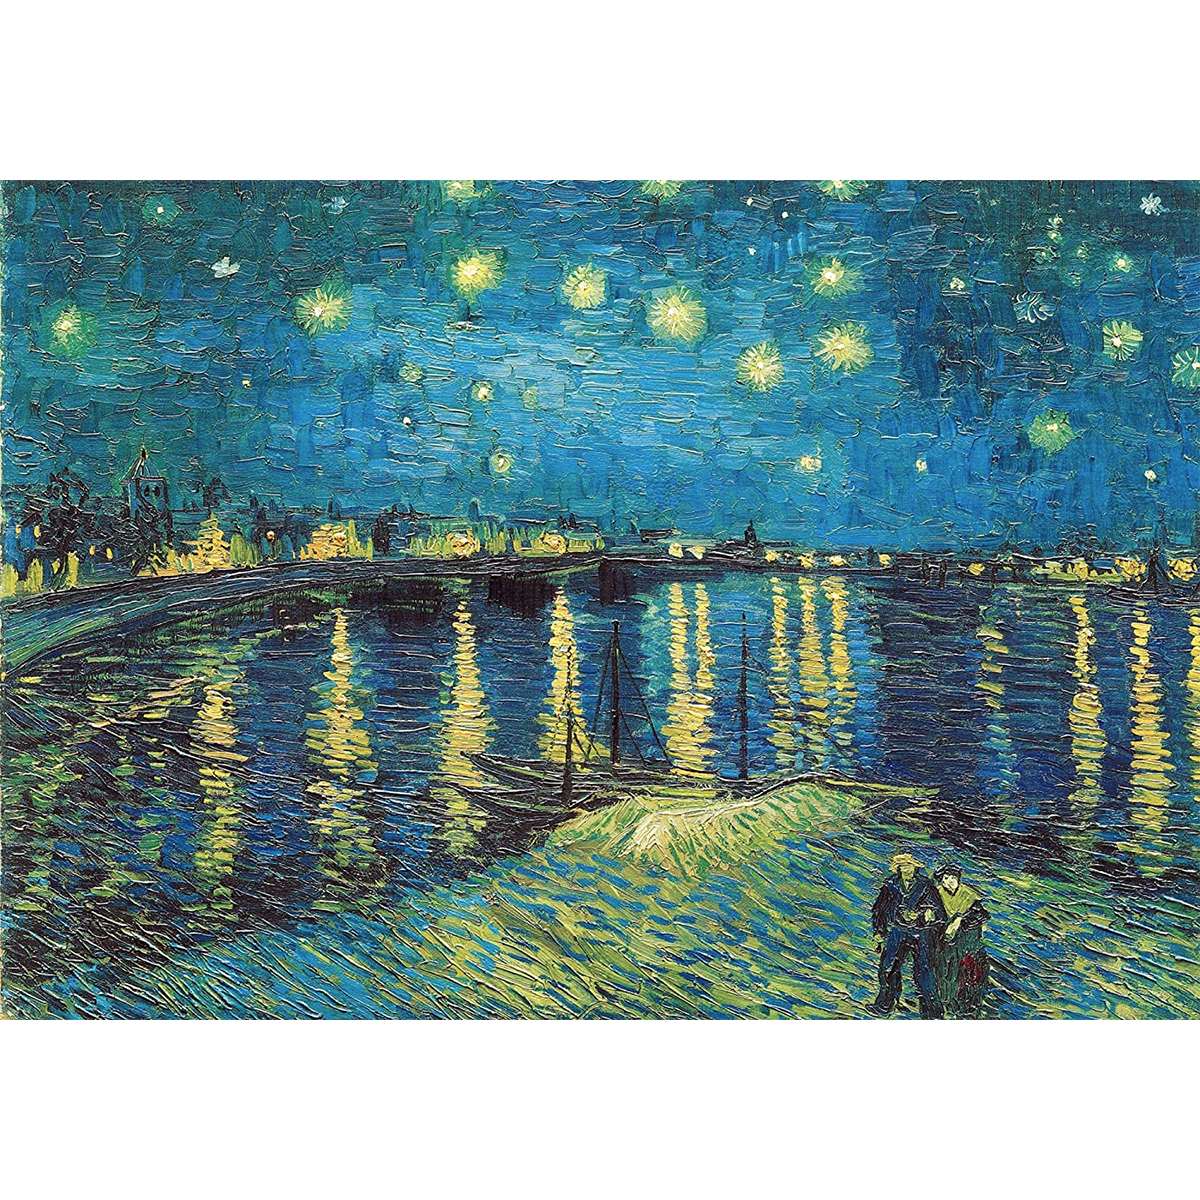 Puzzle van Gogh Noche Estrellada sobre el Ródano de 2000 Piezas